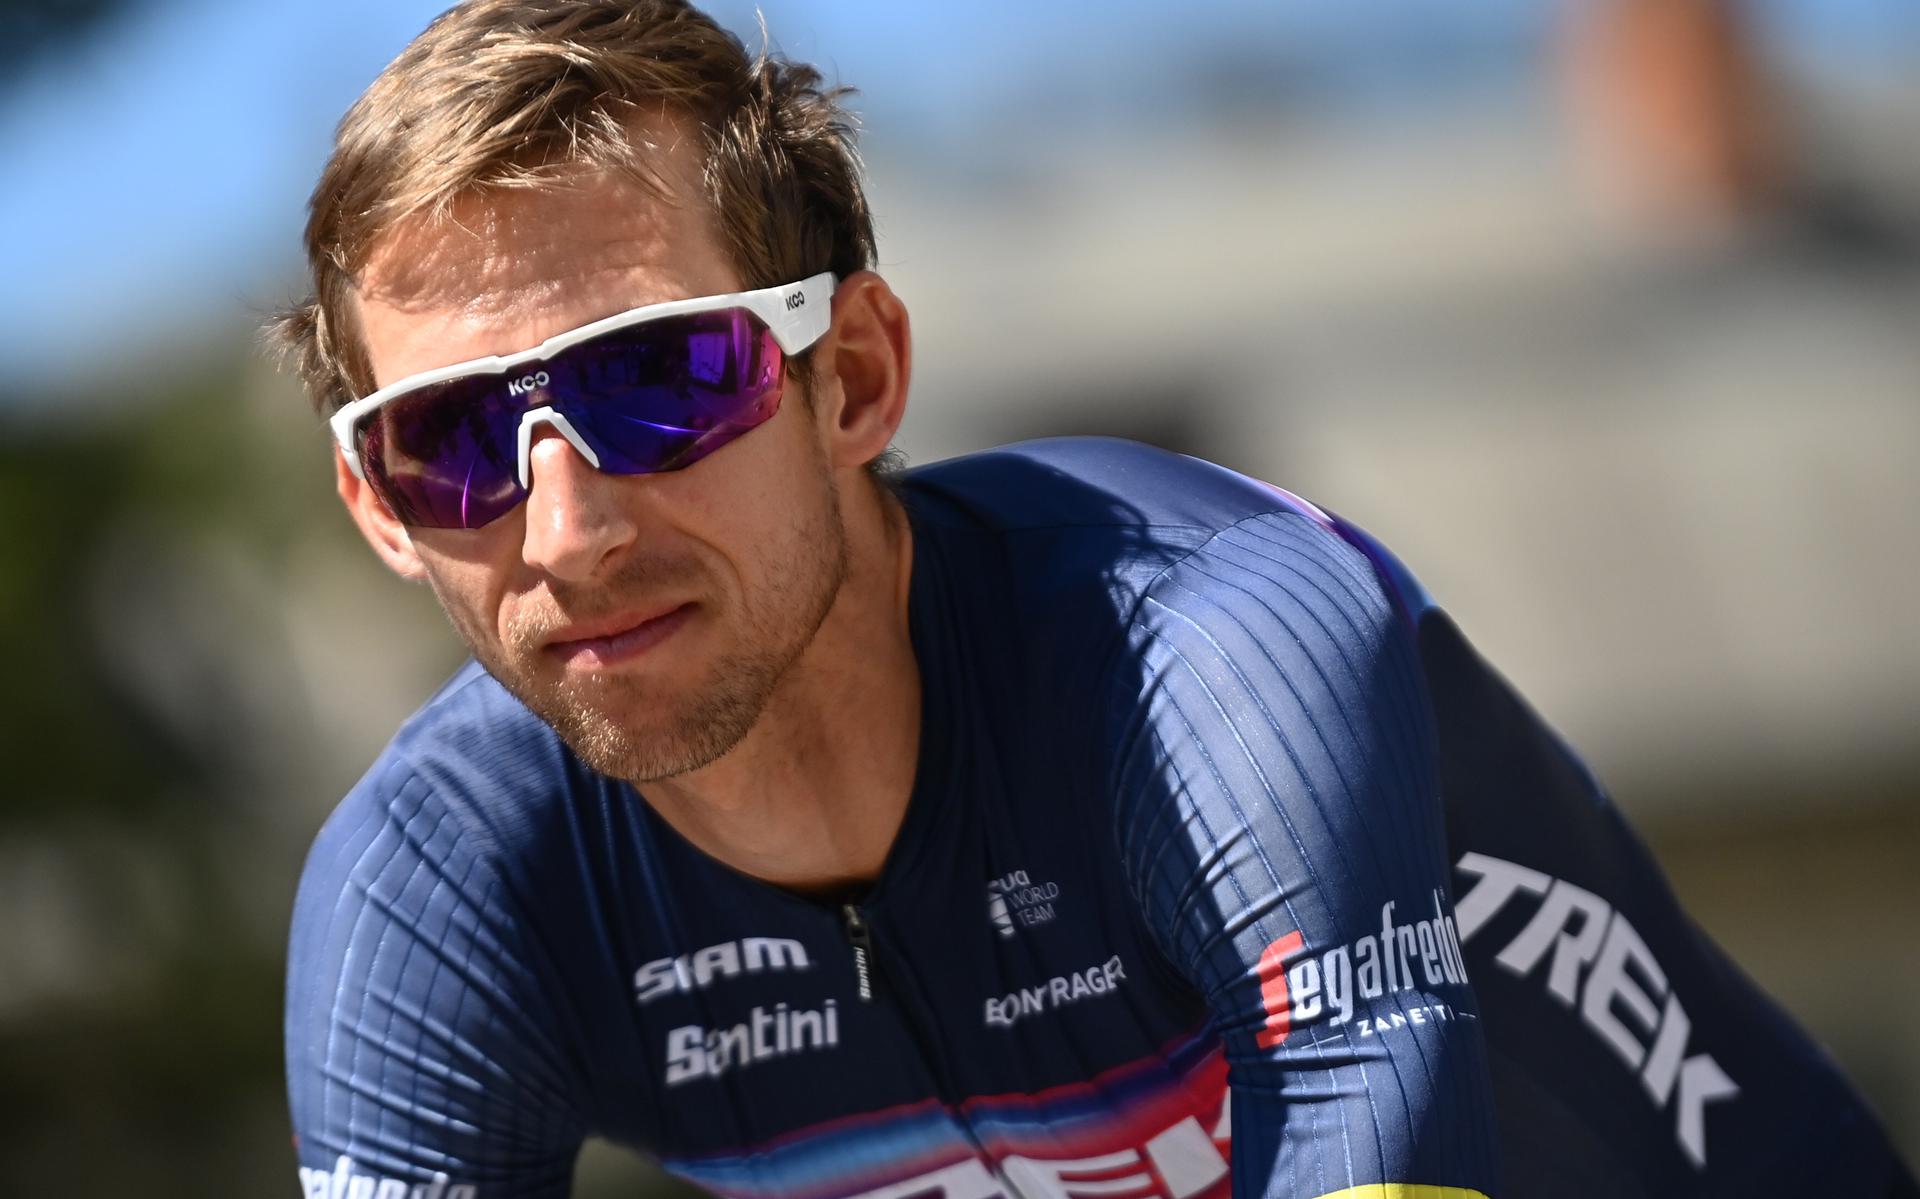 Bauke Mollema maakt zich op voor zijn eerste Omloop Het Nieuwsblad. Later dit seizoen wacht het tweeluik Giro-Tour.